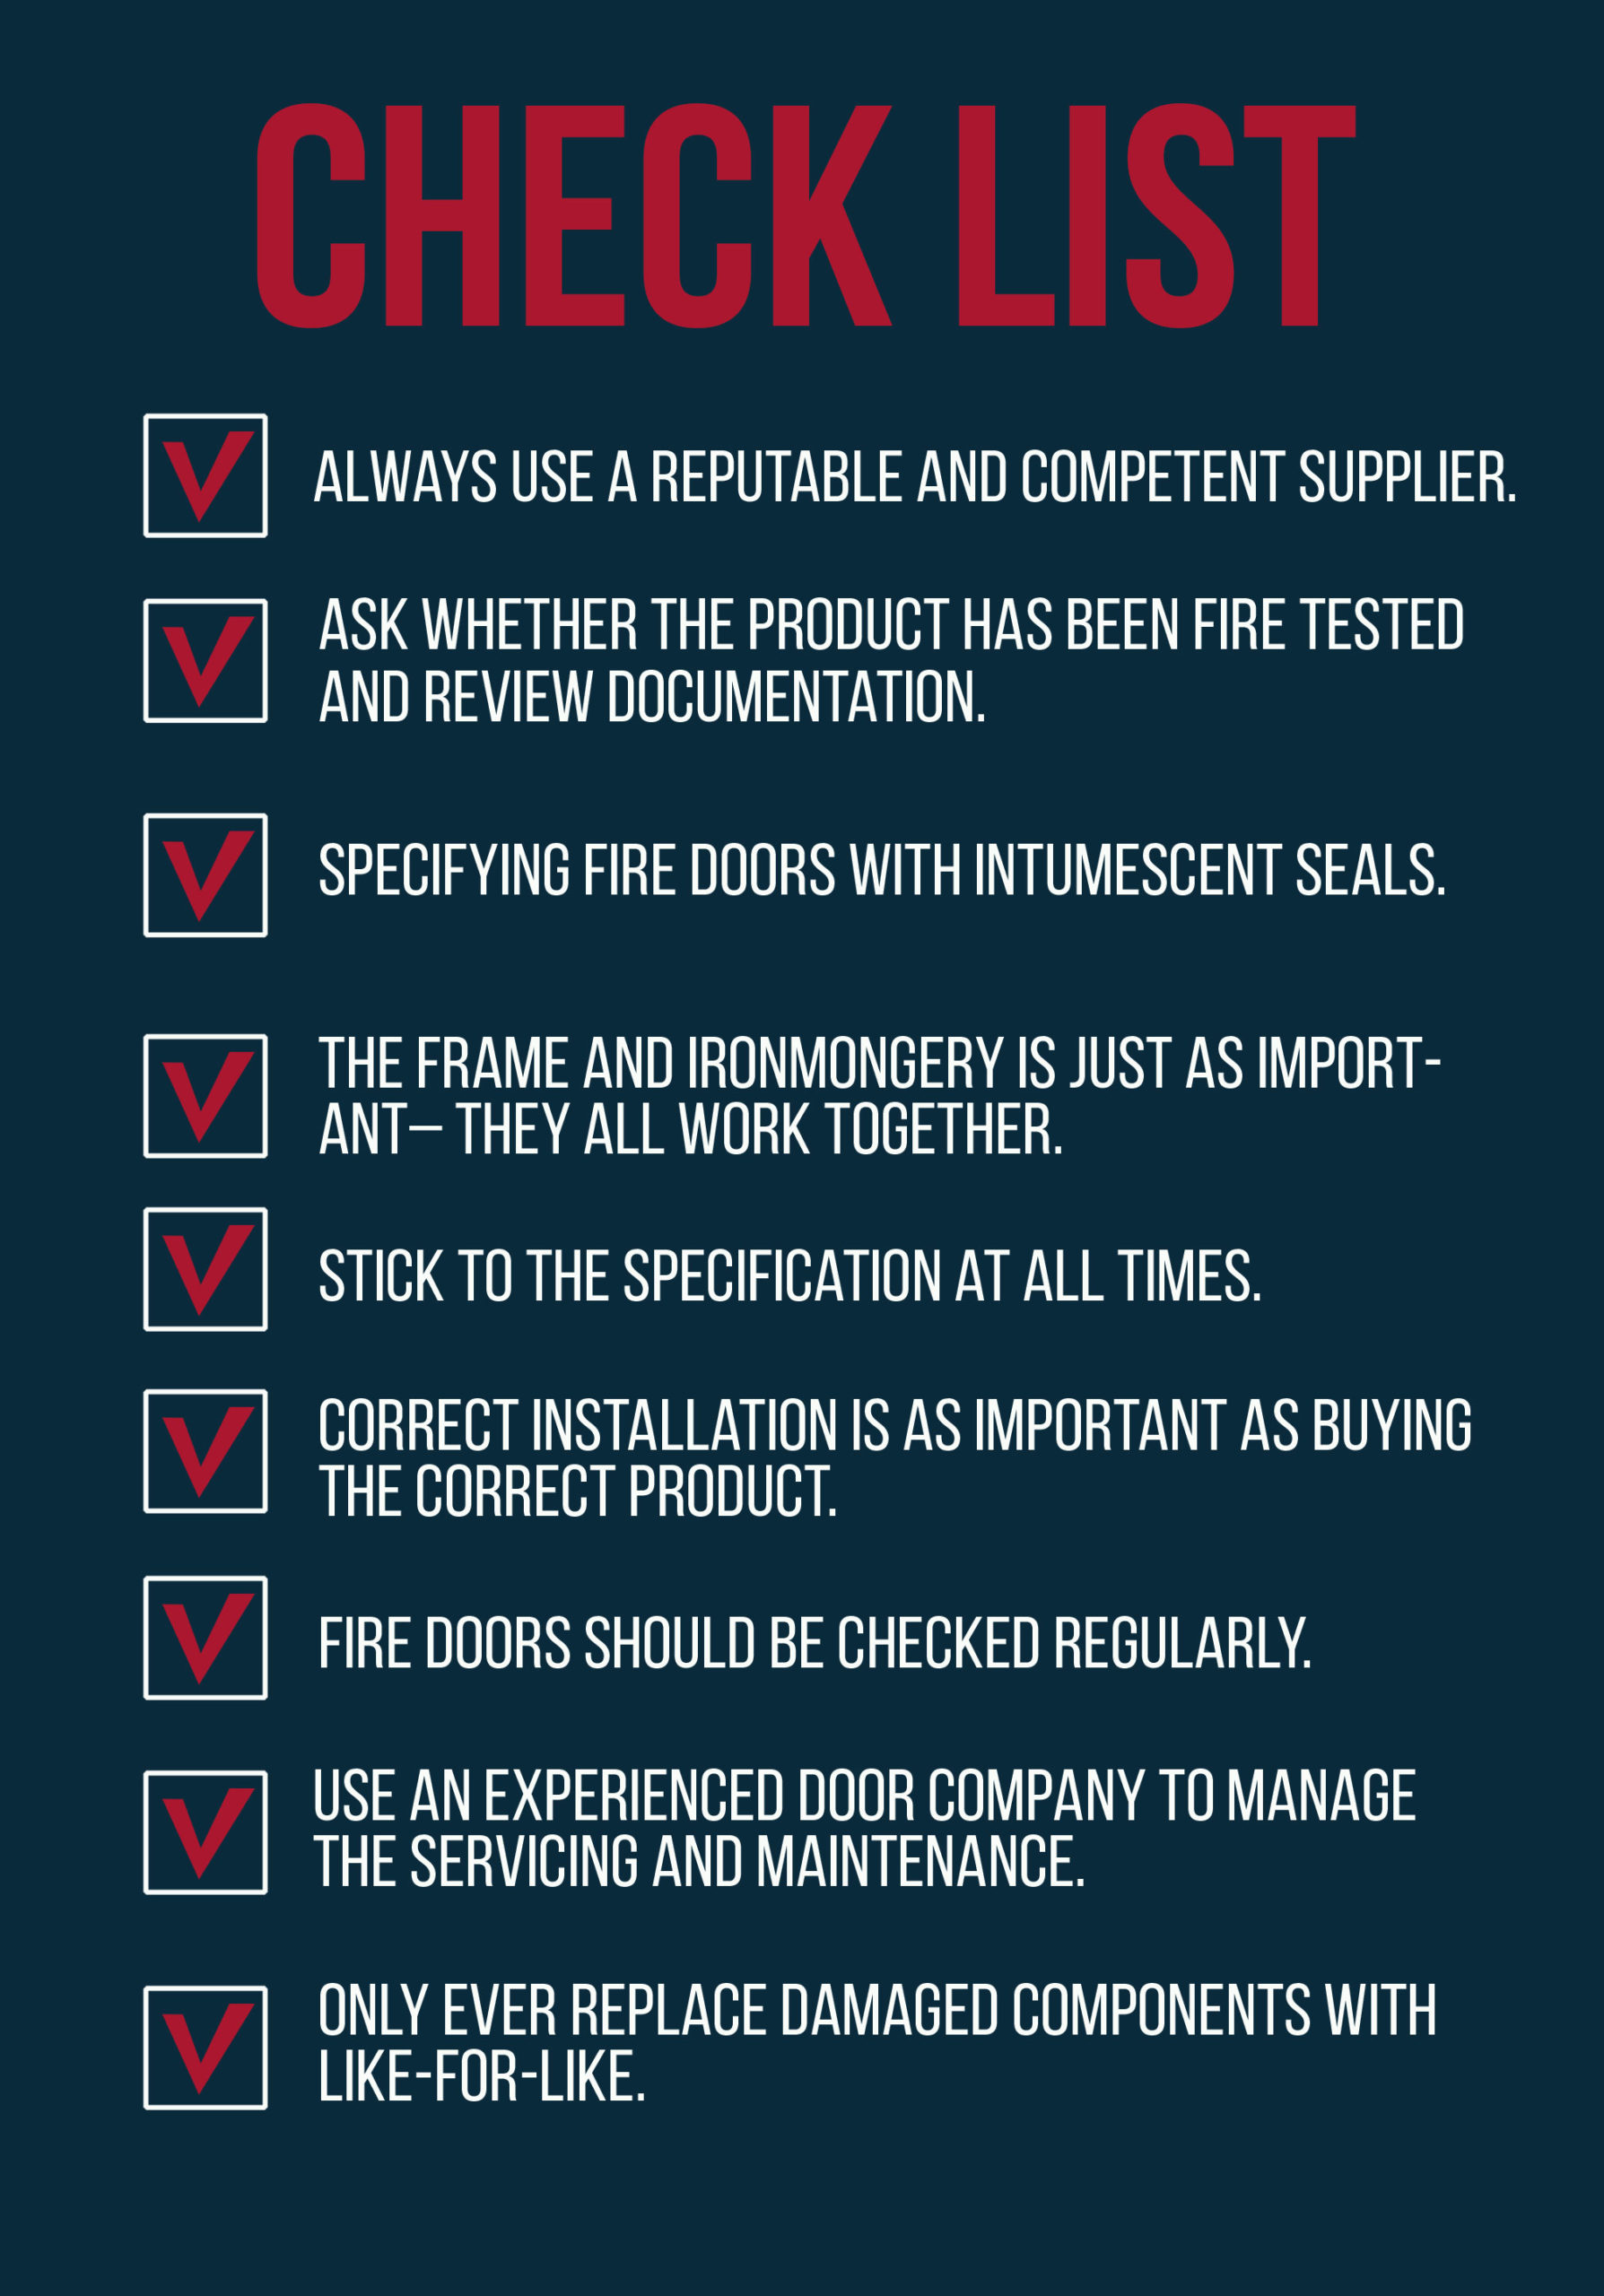 Dortek's Guide to Fire Door Safety